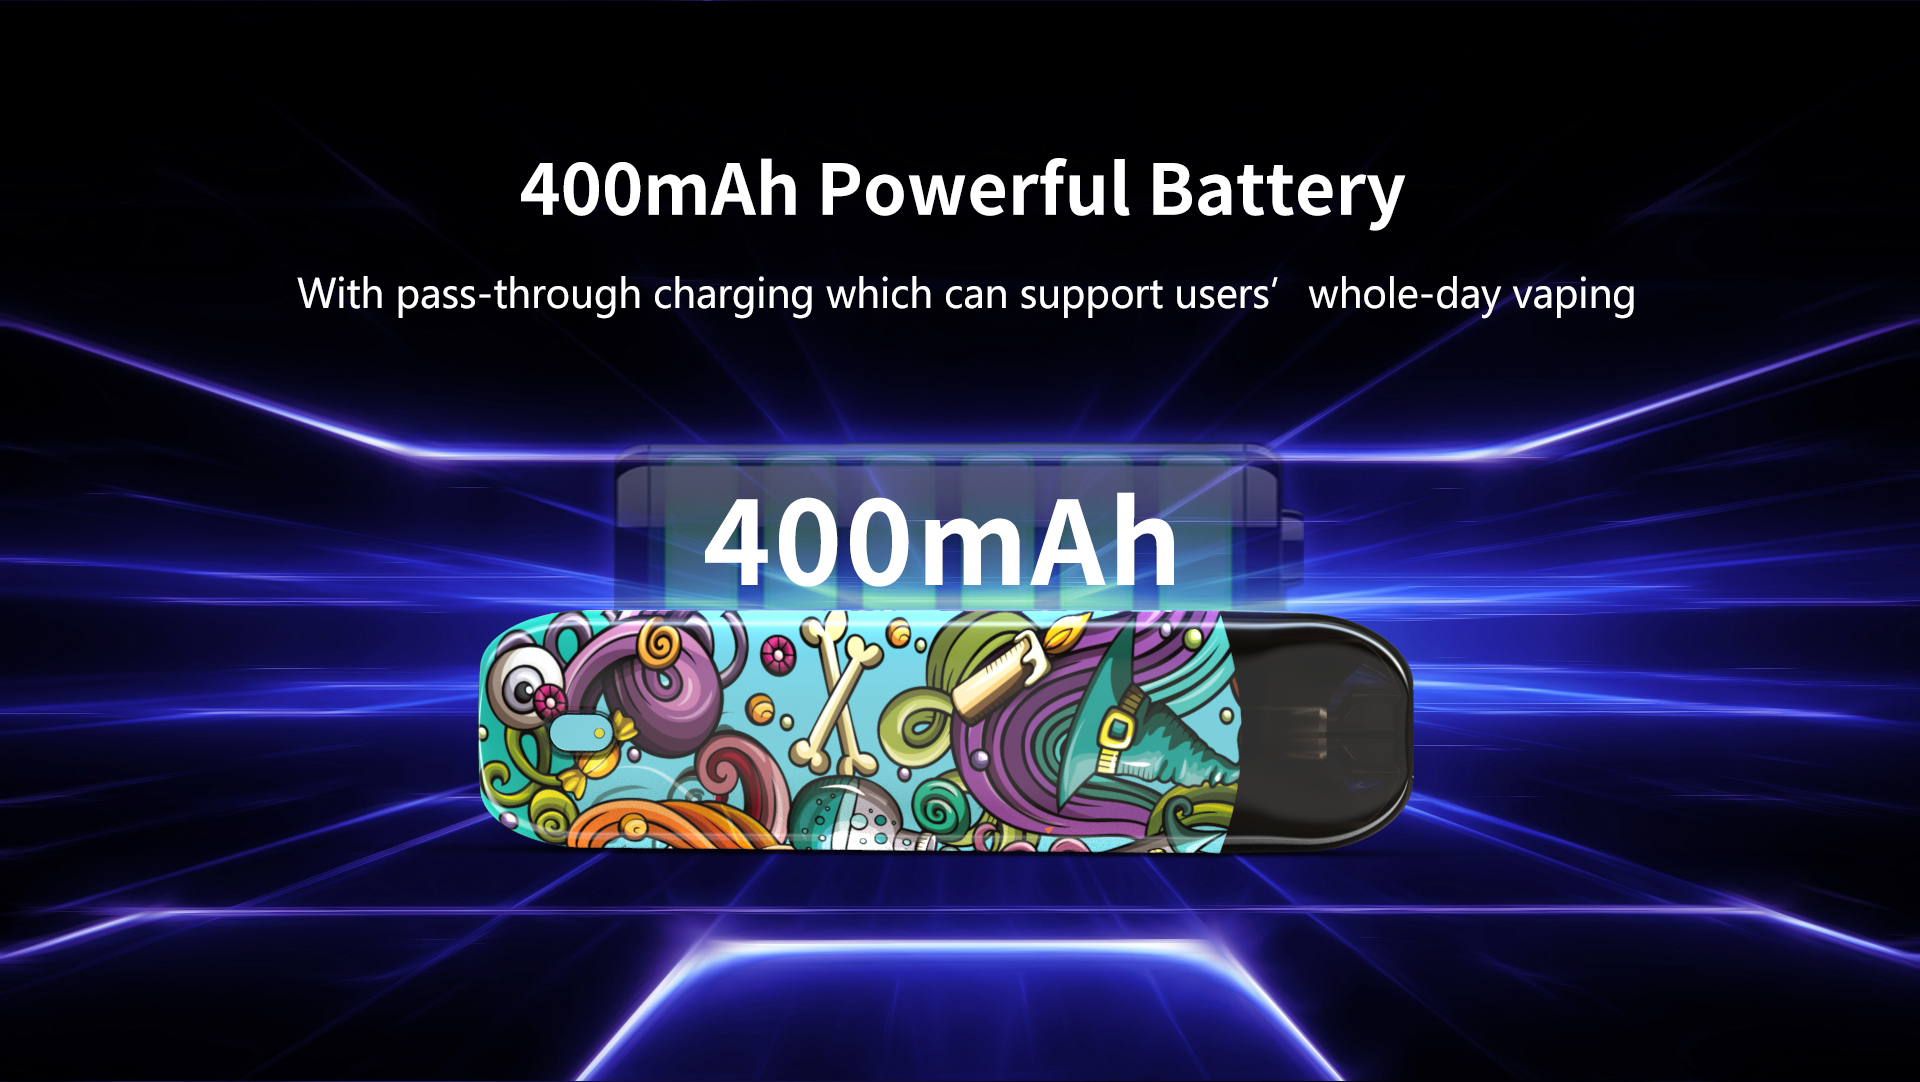 400mAh powerful battery